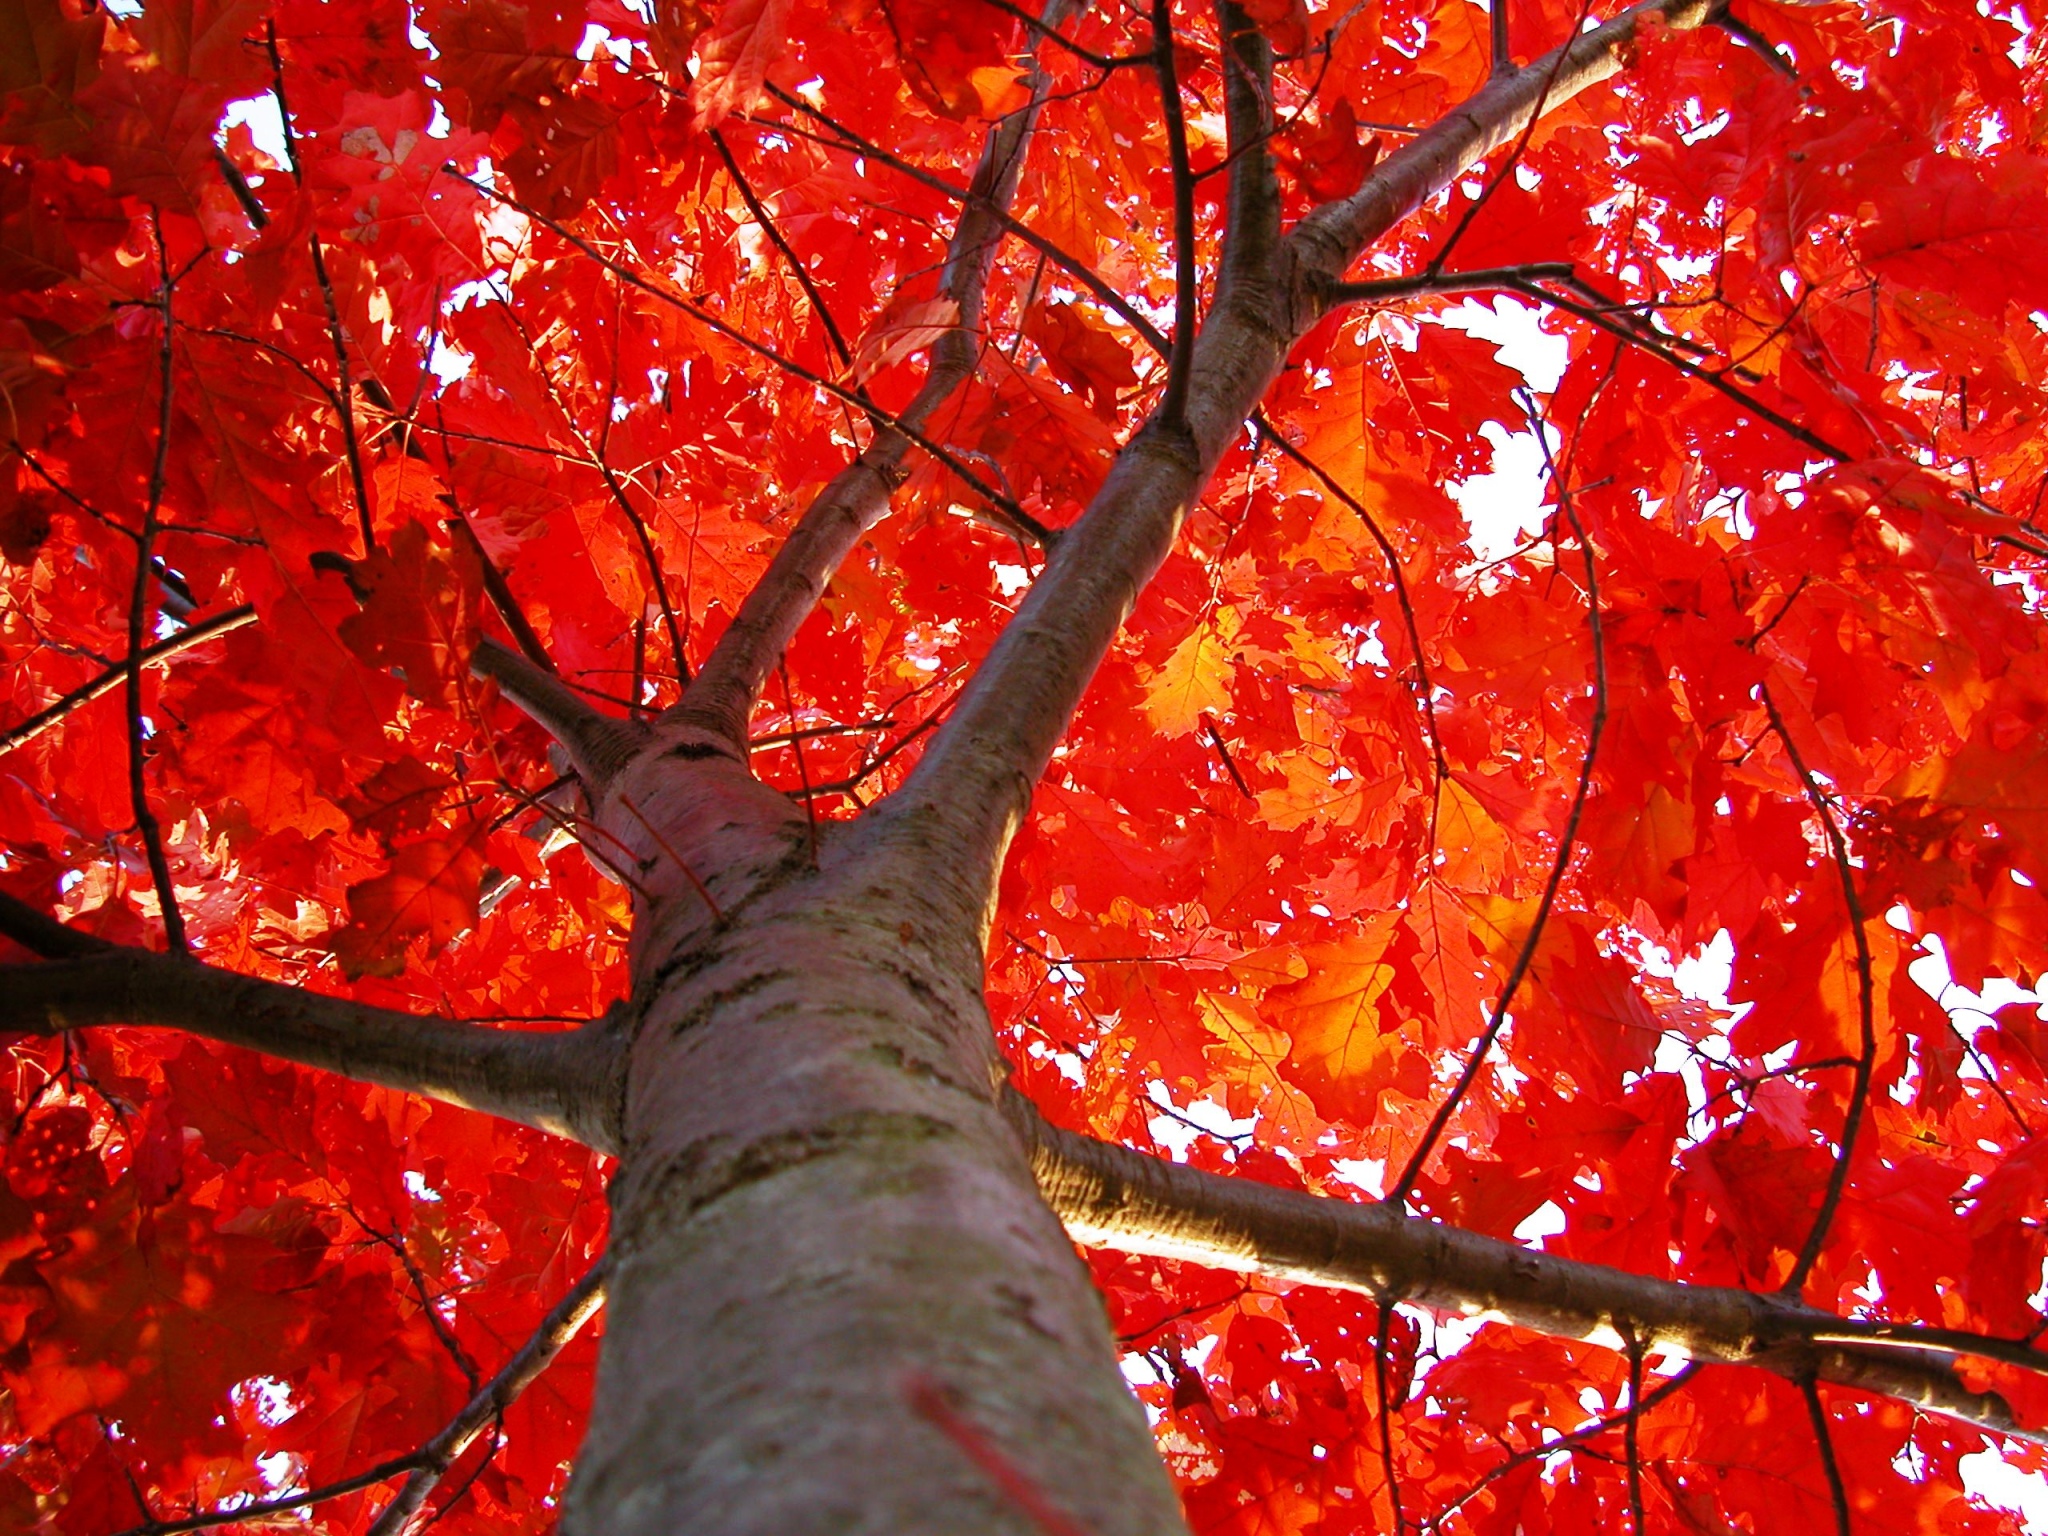 Червонное дерево. Дуб красный Quercus rubra. Quercus rubra (дуб красный) 'Aurea'. Дерево Red Oak. Дуб красный (50-60 см).